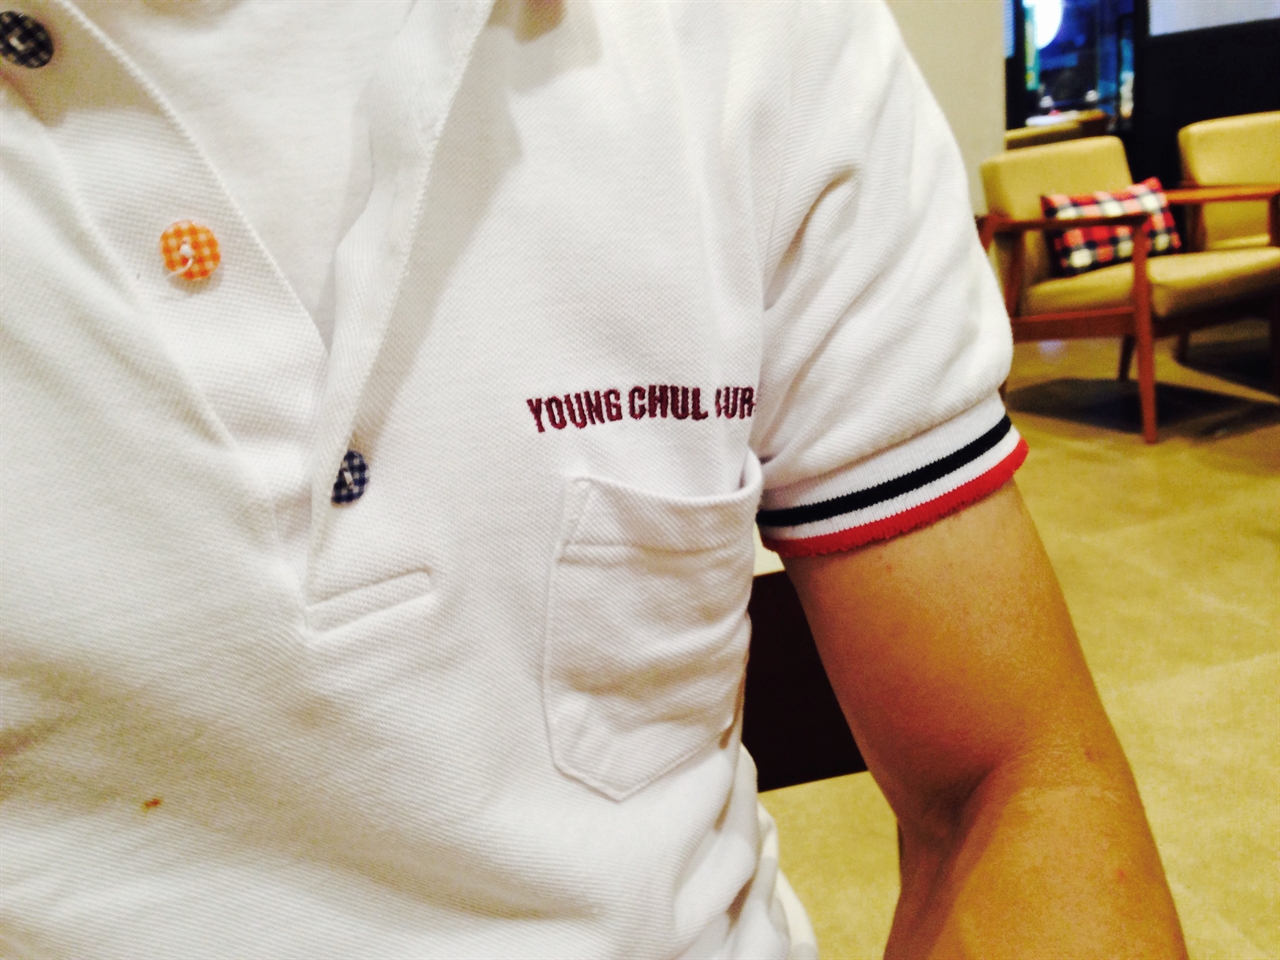 서울시 성북구의 한 카페에서 만난 영철버거 창업자 이영철(48)씨는 영철버거 유니폼을 입고 있었다. 이씨는 가게에 나갈 일은 없지만, 항상 영철버거 유니폼을 입는다고 했다.